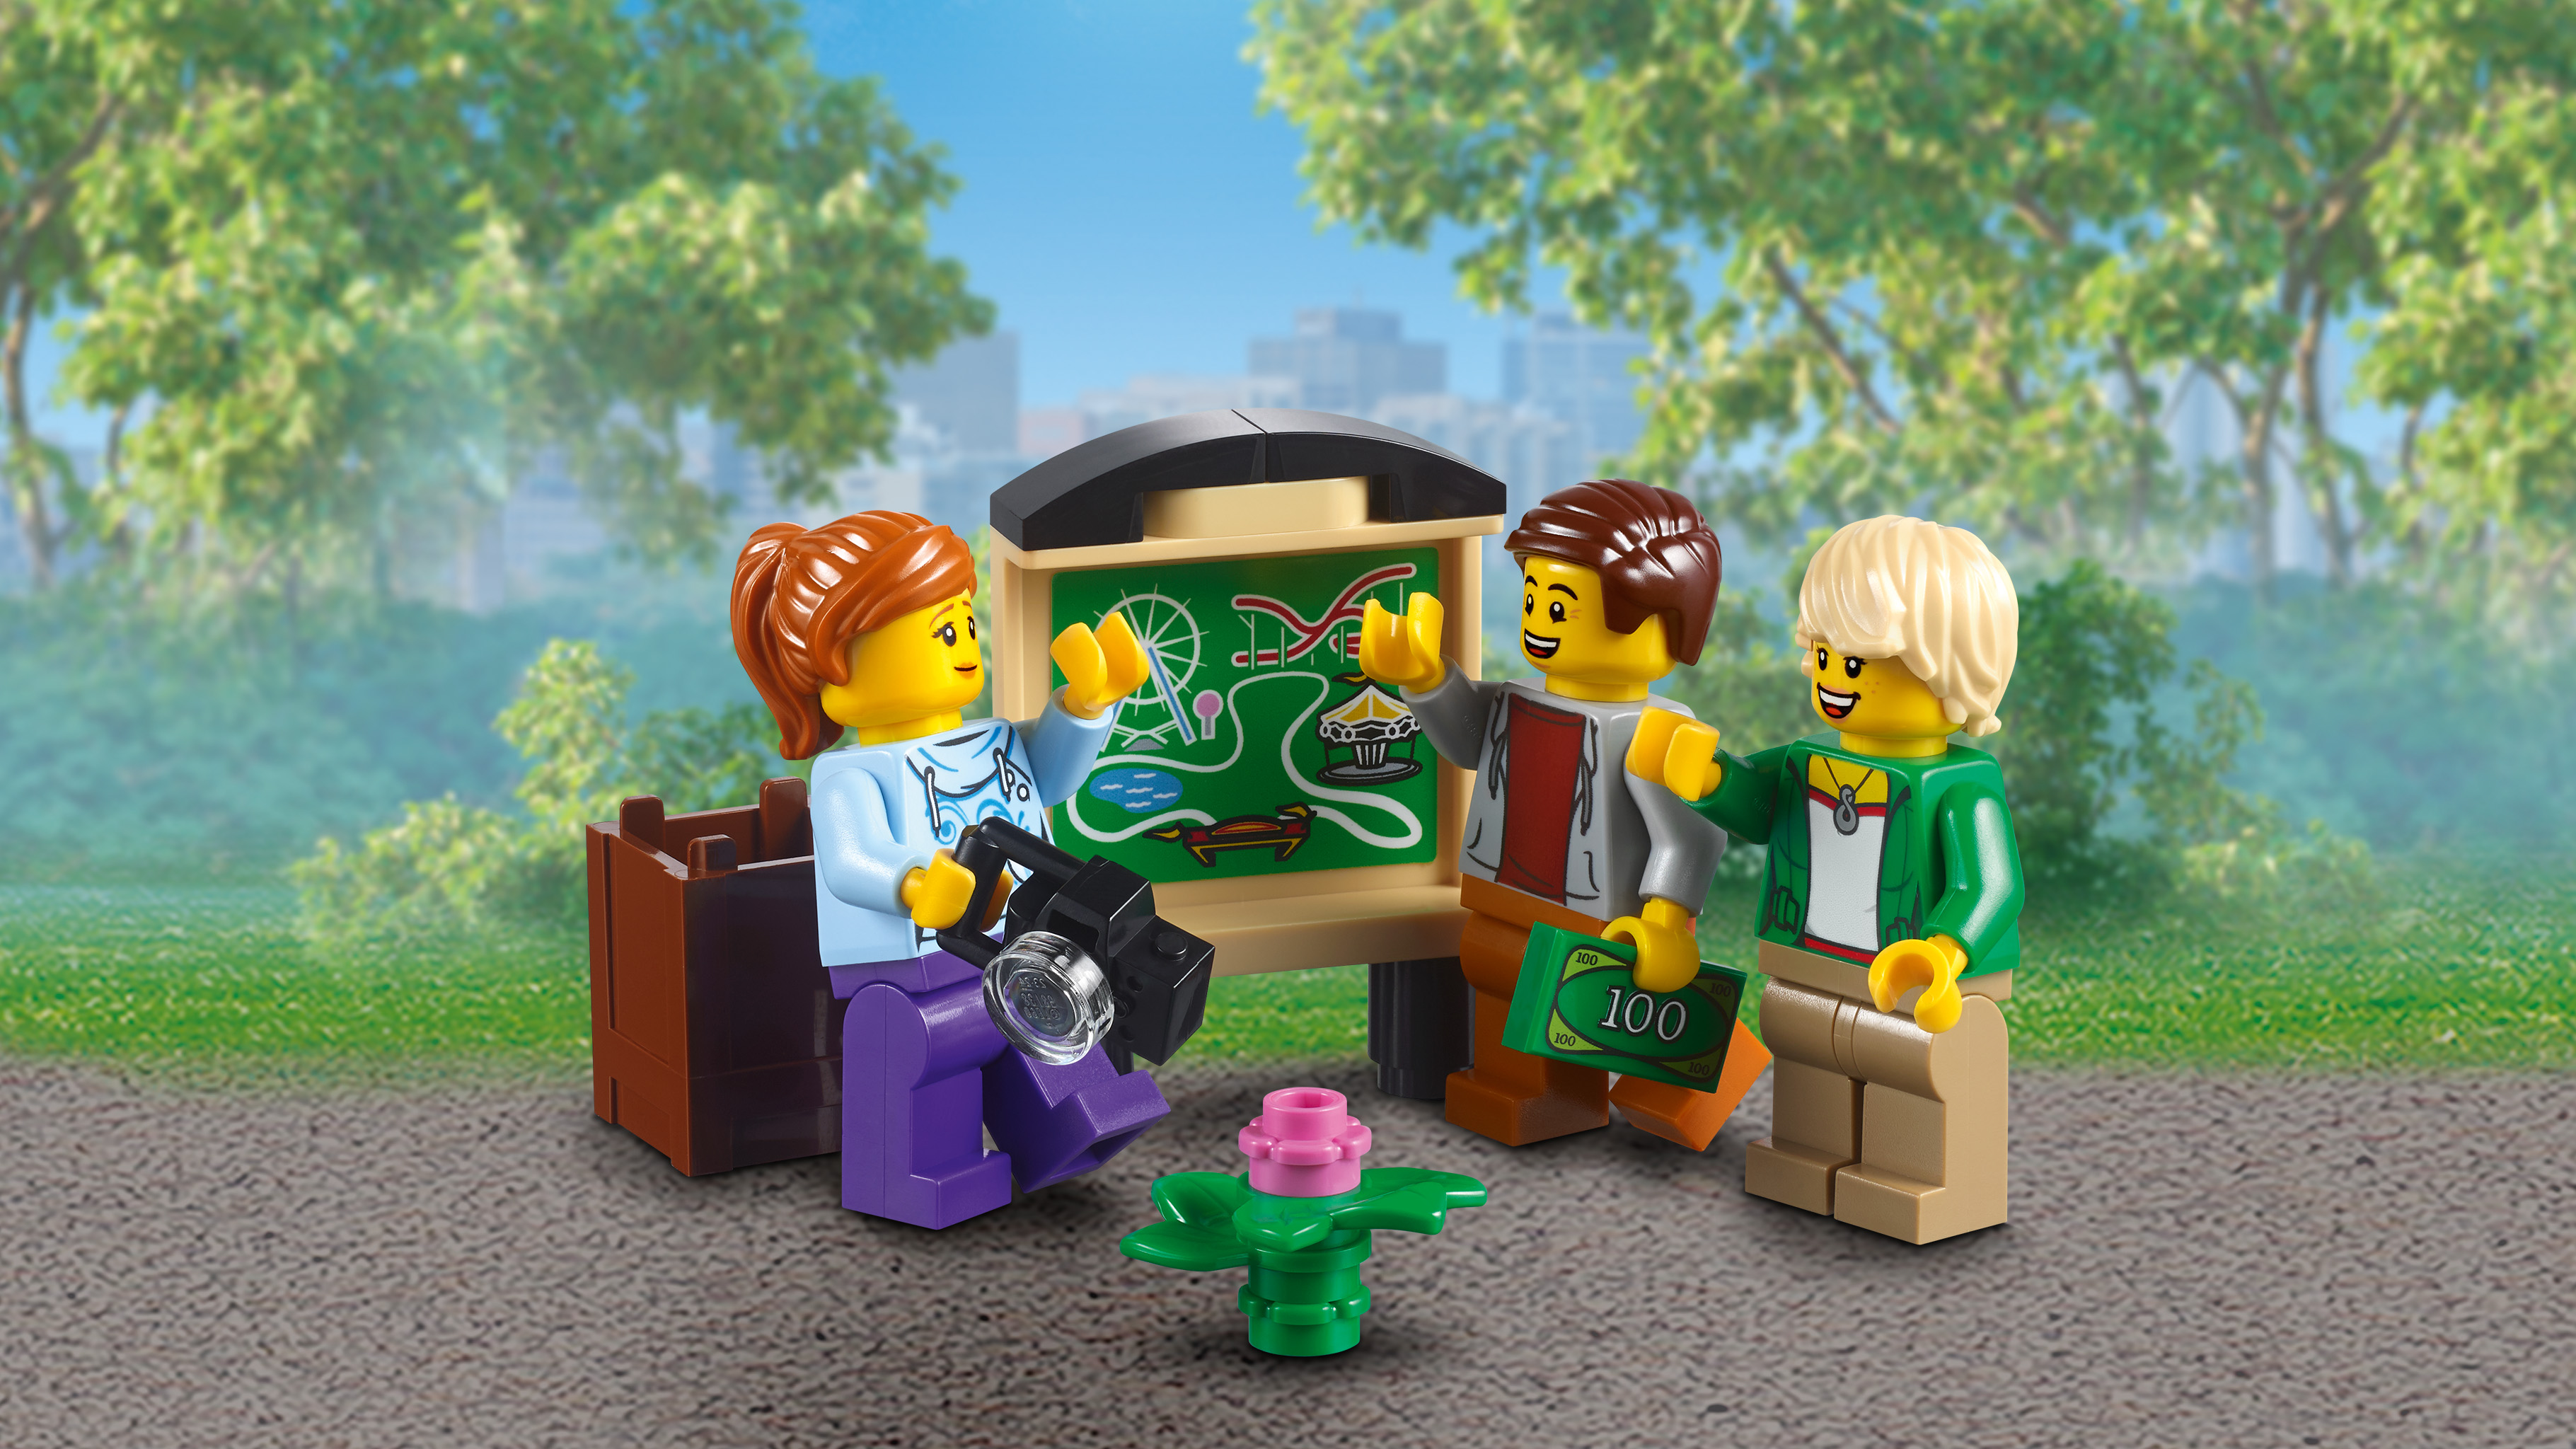 LEGO Creator Expert 10261 Tàu Lượn Siêu Tốc (4124 chi tiết)